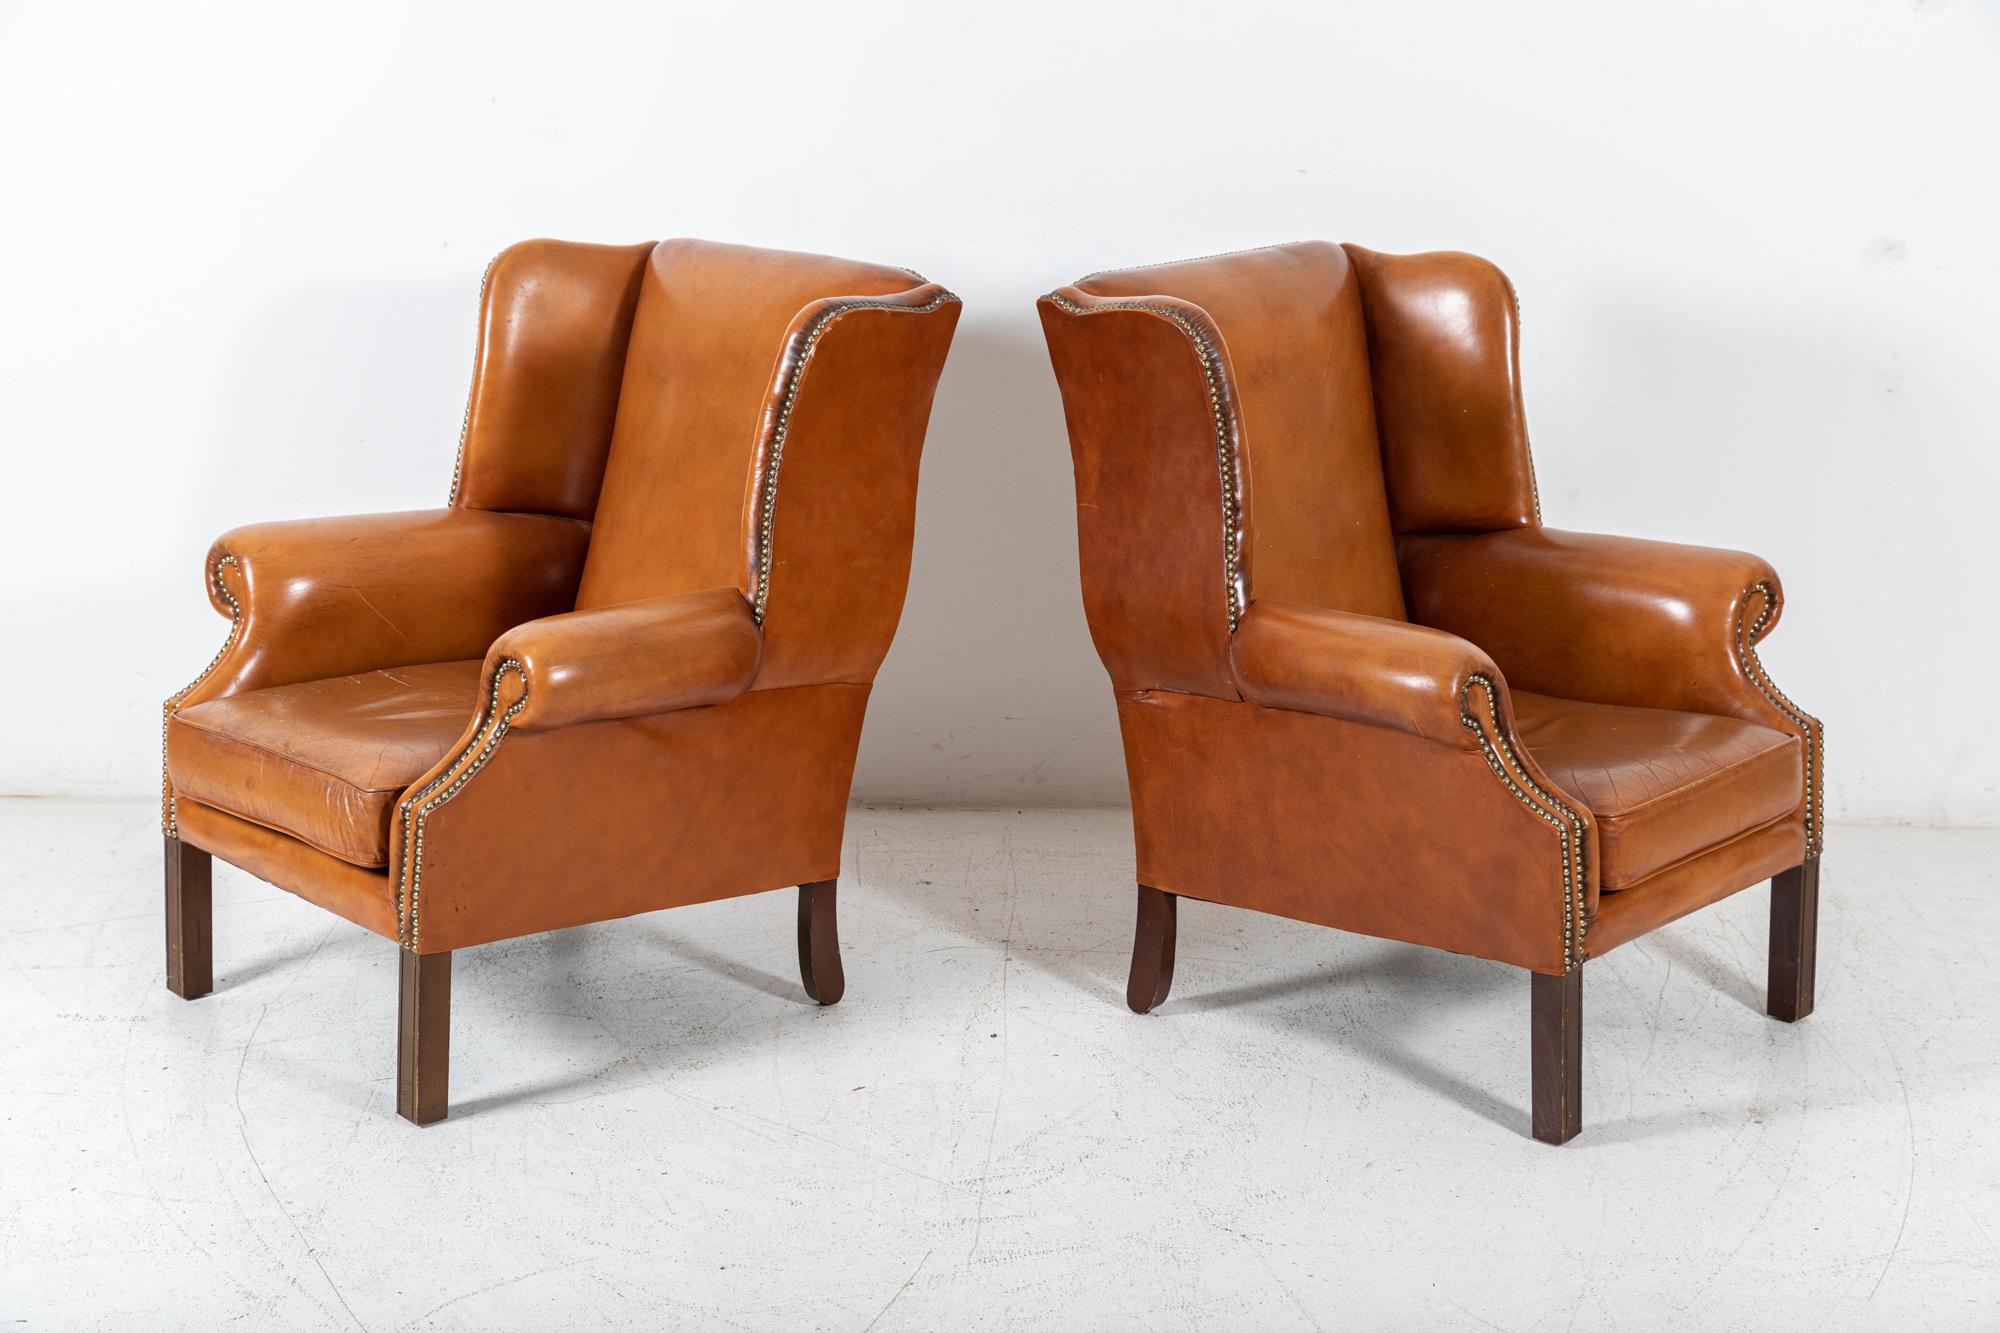 Circa 1950

Paire de fauteuils wingback en cuir fauve de style géorgien

Le laiton clouté avec une couleur et une forme excellentes

Le prix est pour la paire



Mesures : L76 x D64 x H97 cm.